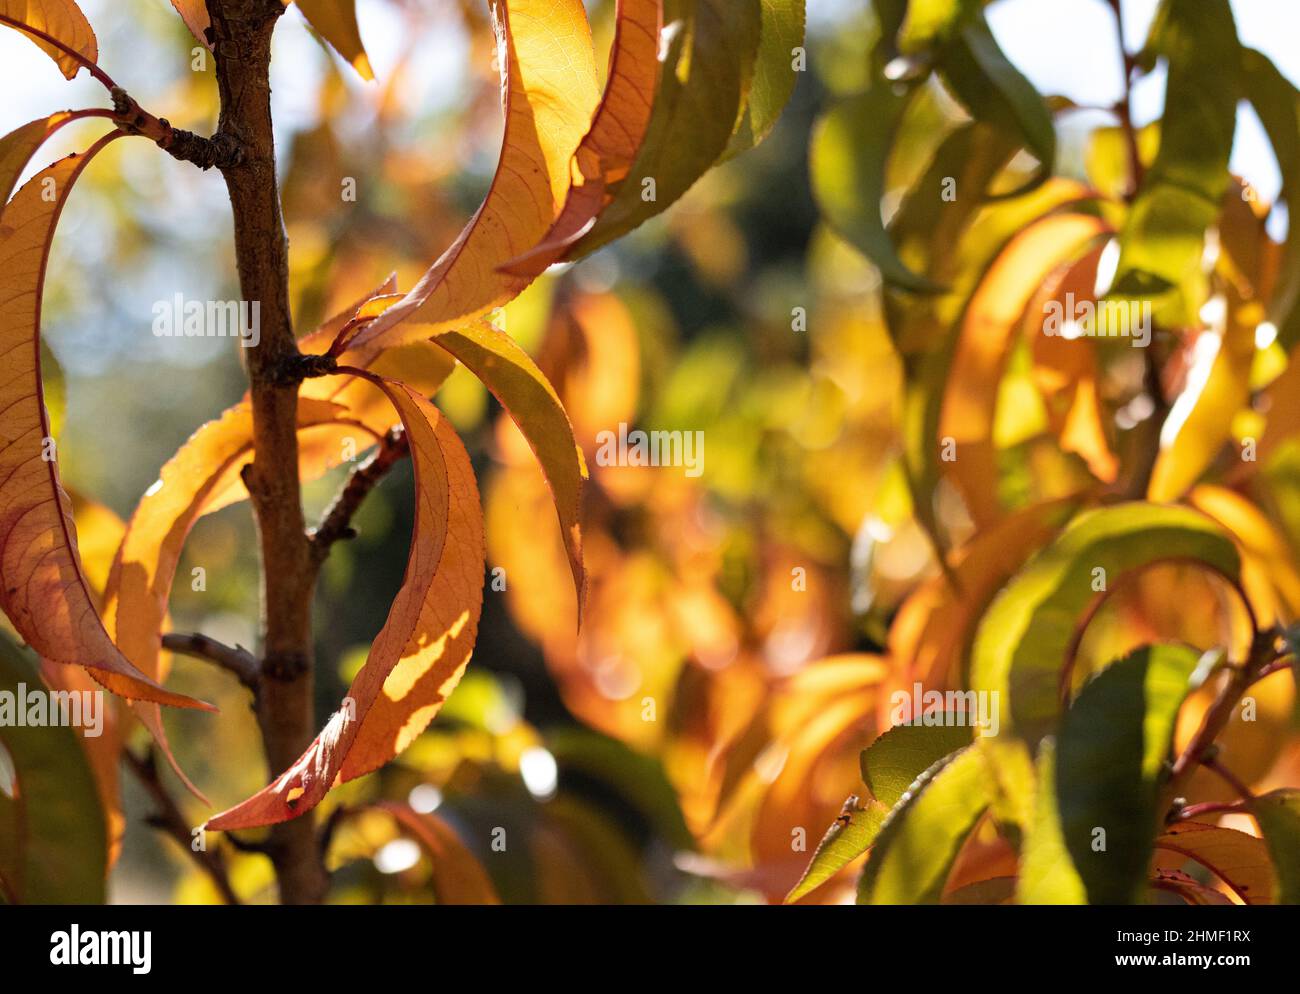 Sonnenlicht scheint durch goldene Pfirsichblätter auf dem Baum im Herbst Stockfoto